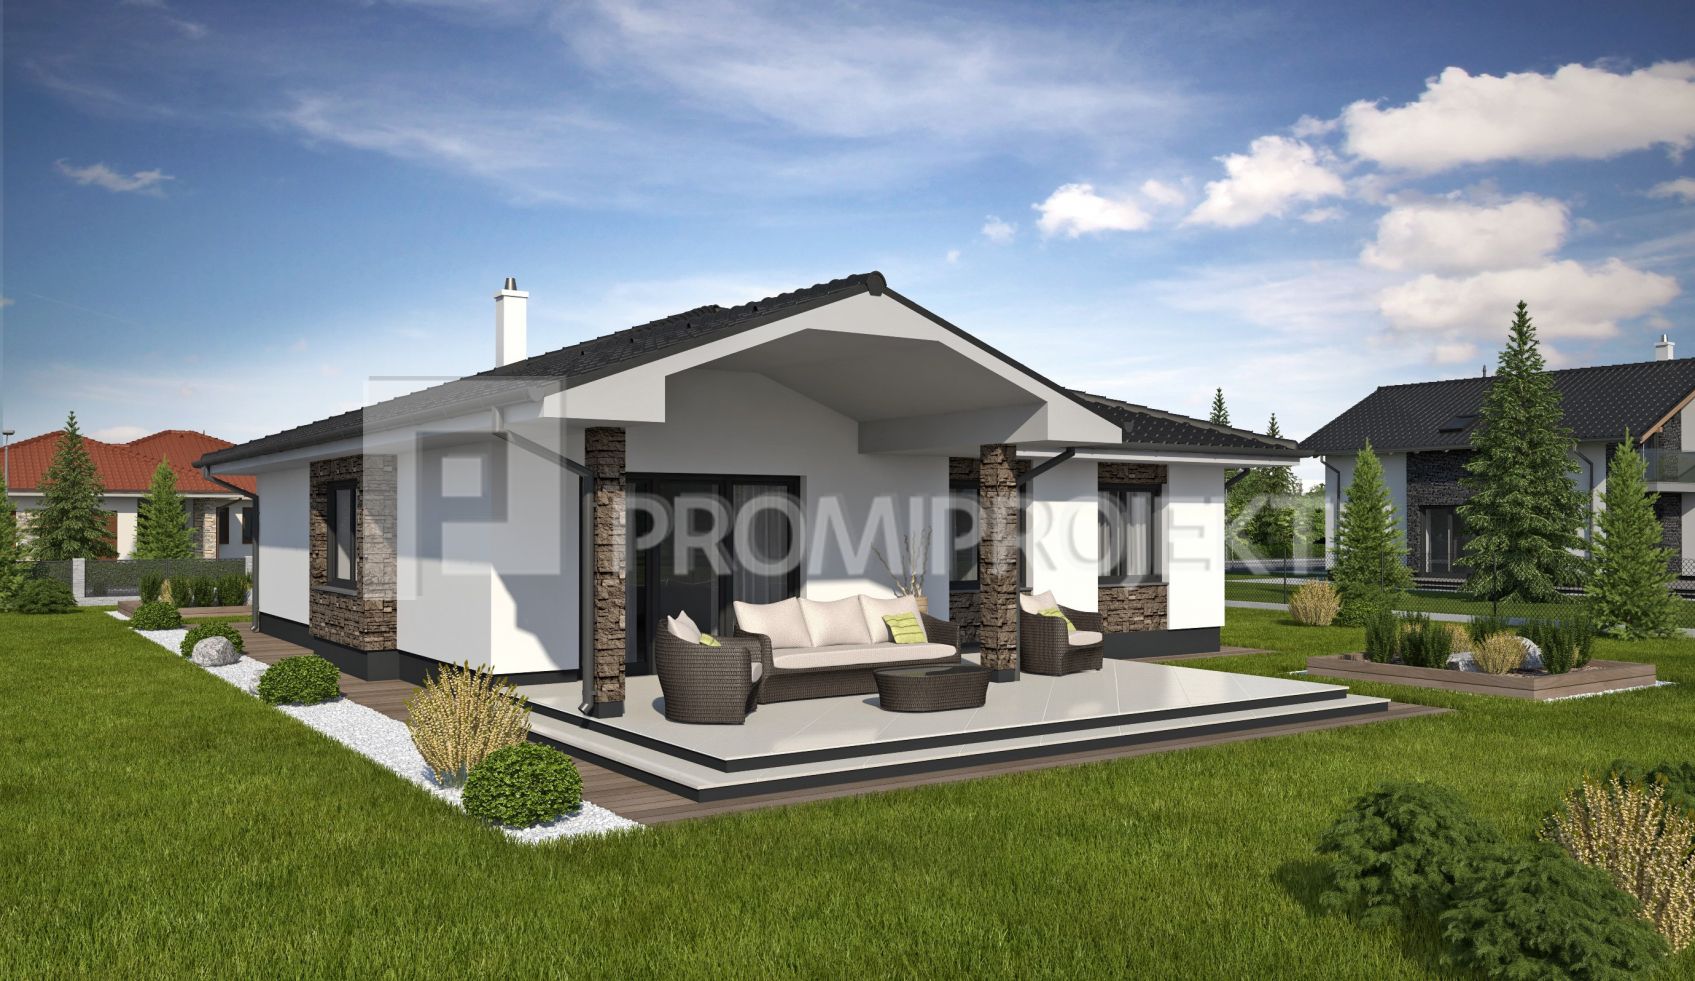 Katalógový projekt bungalovu s terasou  Laguna 43, vizuál, zrkadlový 4, Promiprojekt